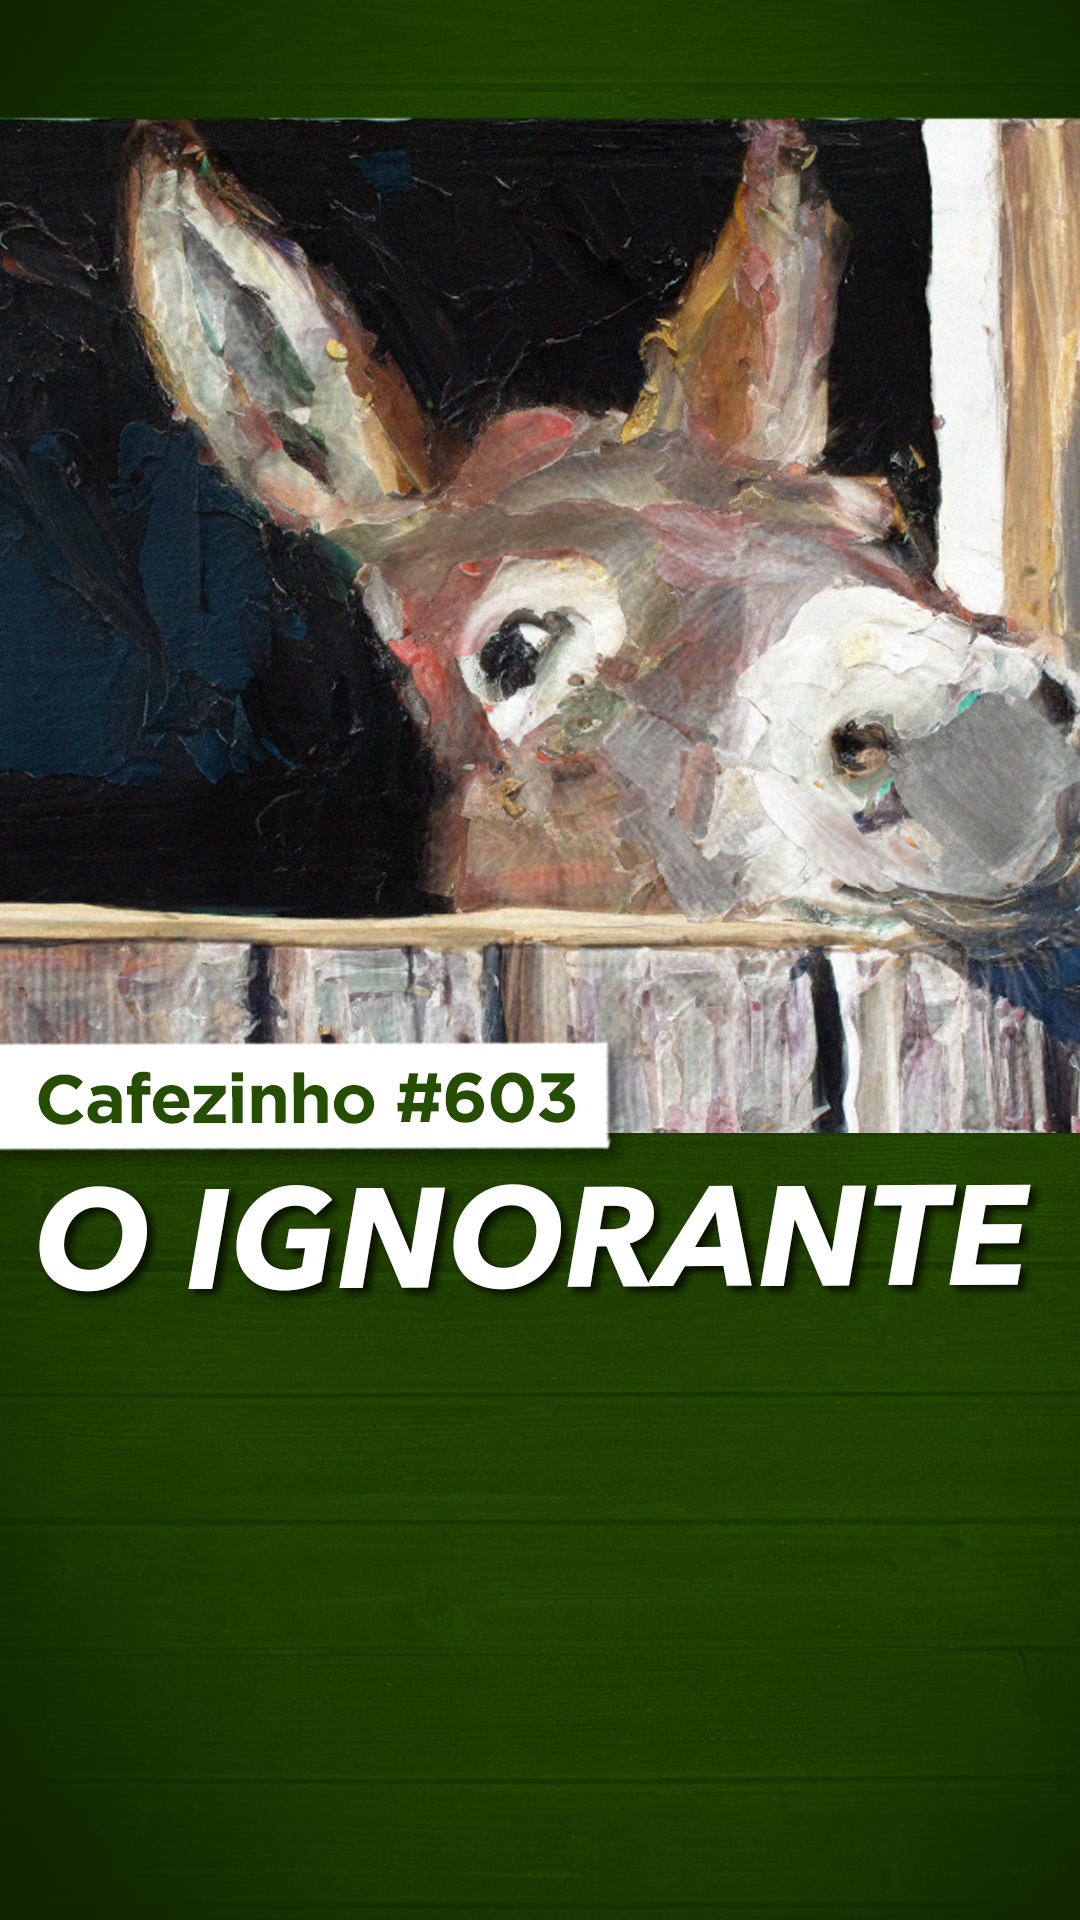 Cafezinho 603 - O ignorante